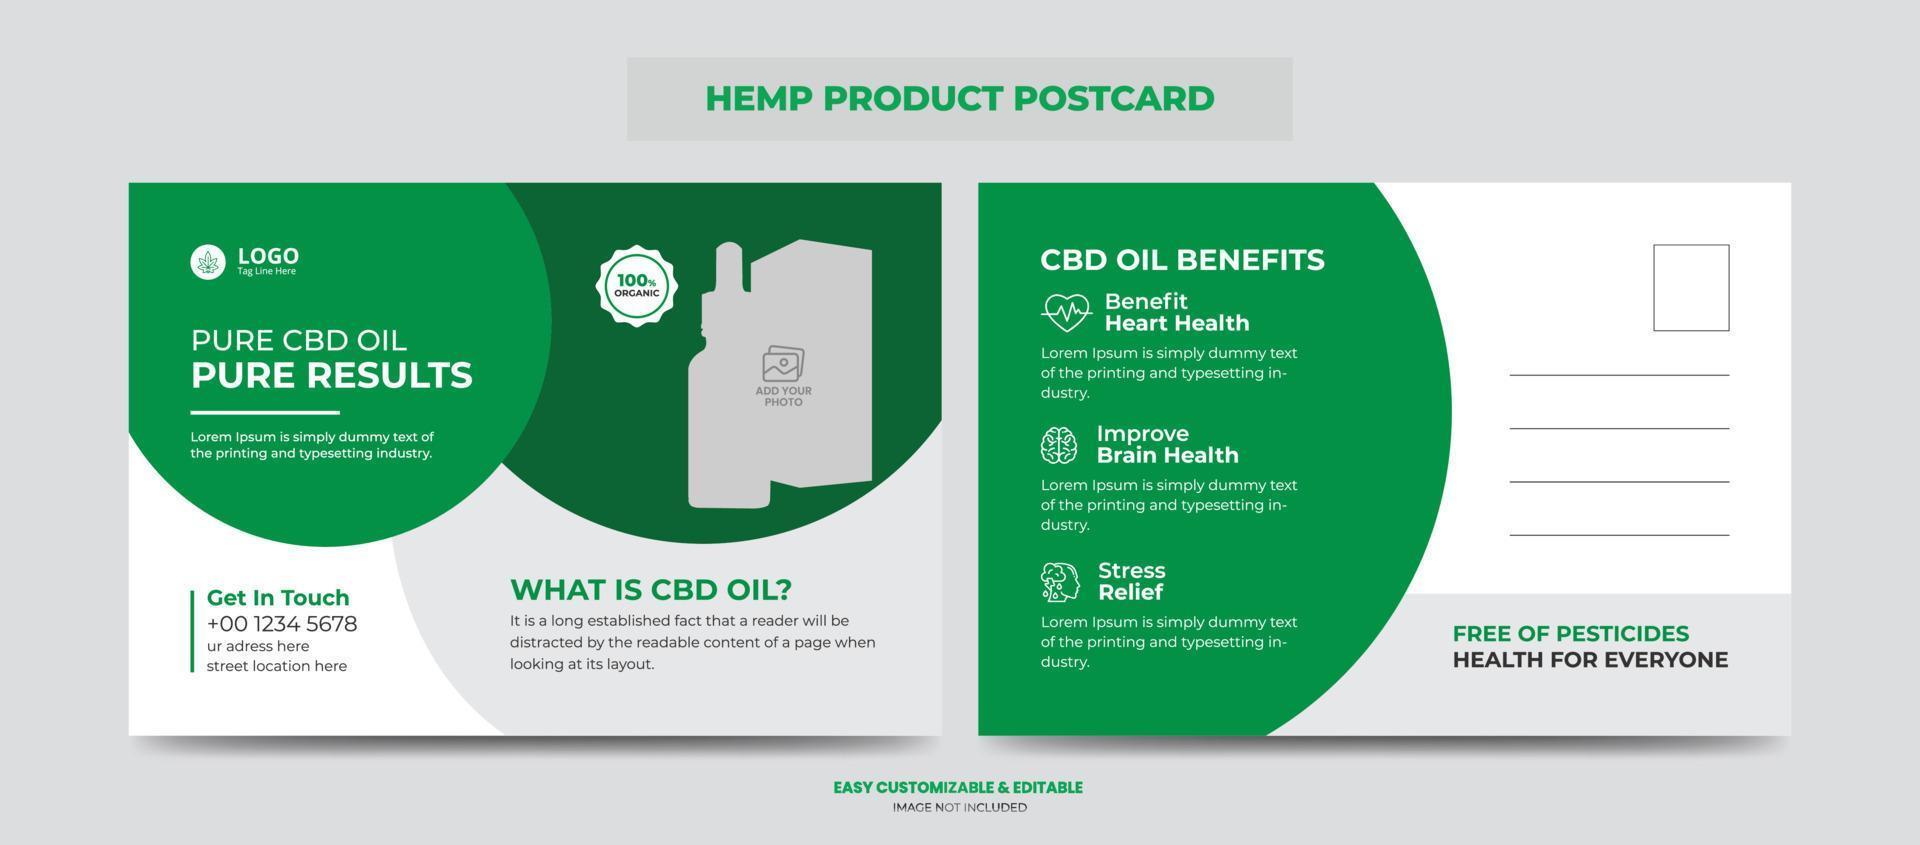 cartão postal de produto de cânhamo ou cbd. modelo de design de cartão postal promocional ou de venda de produto cannabis sativa vetor